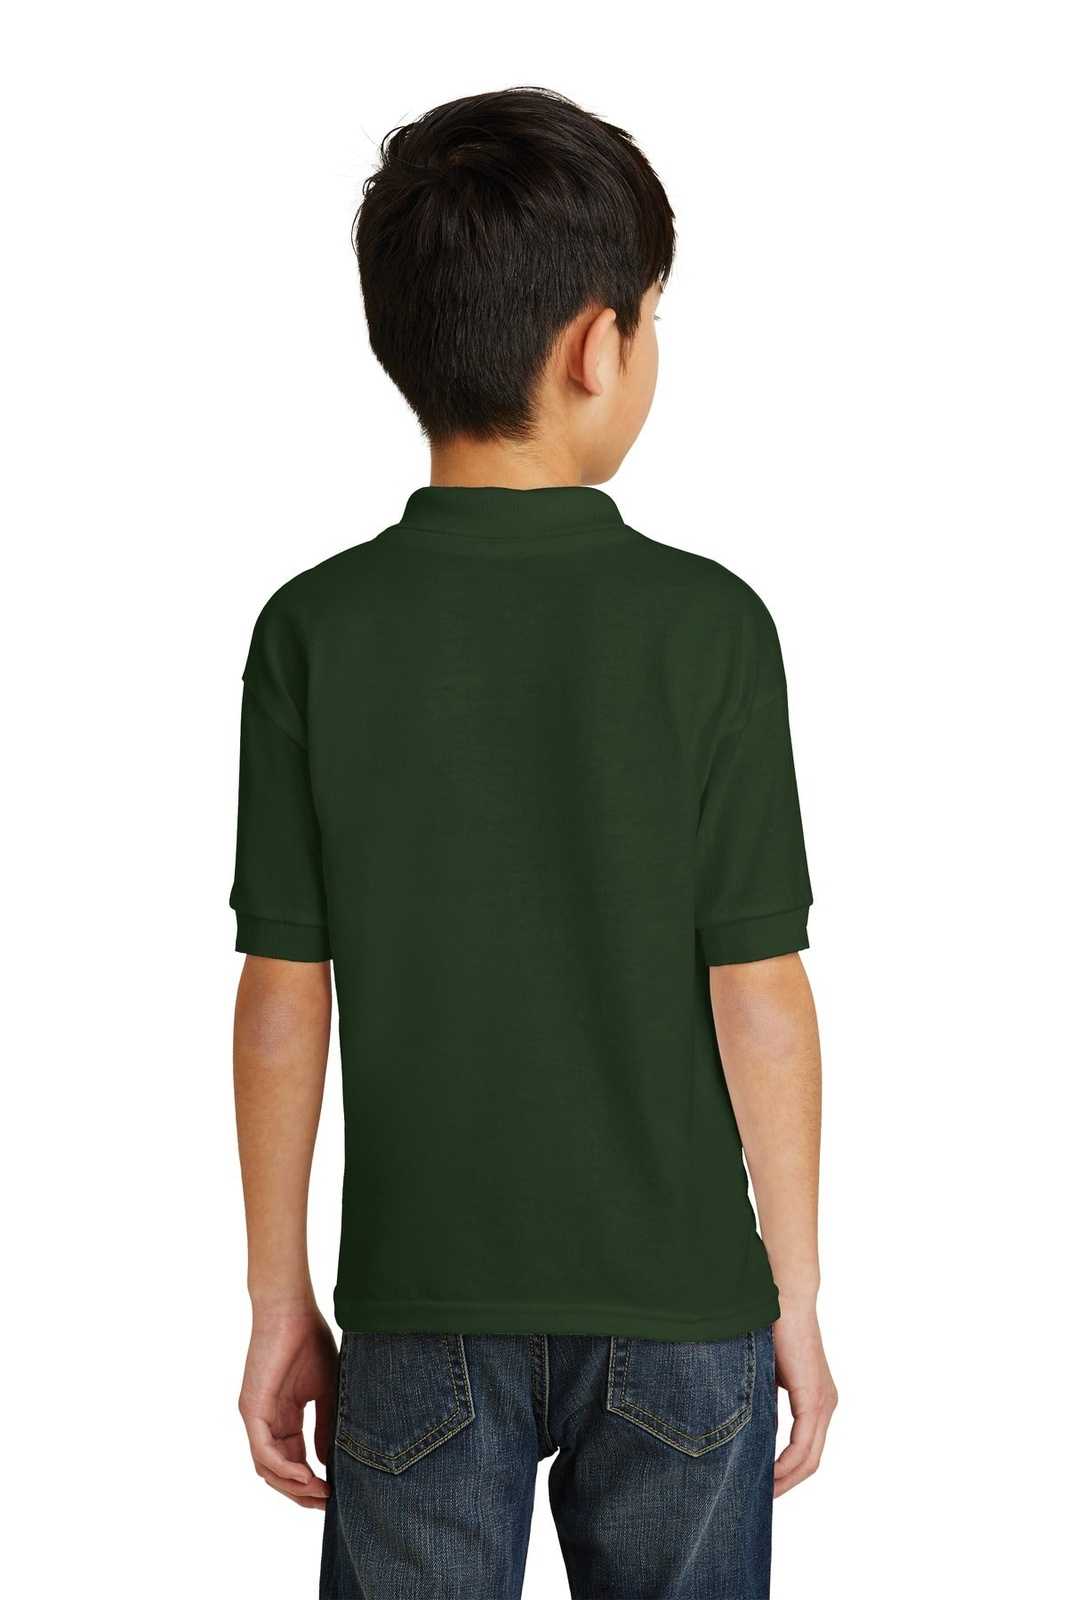 Gildan 8800B Youth Dryblend 6-Ounce Jersey Knit Sport Shirt - Forest Green - HIT a Double